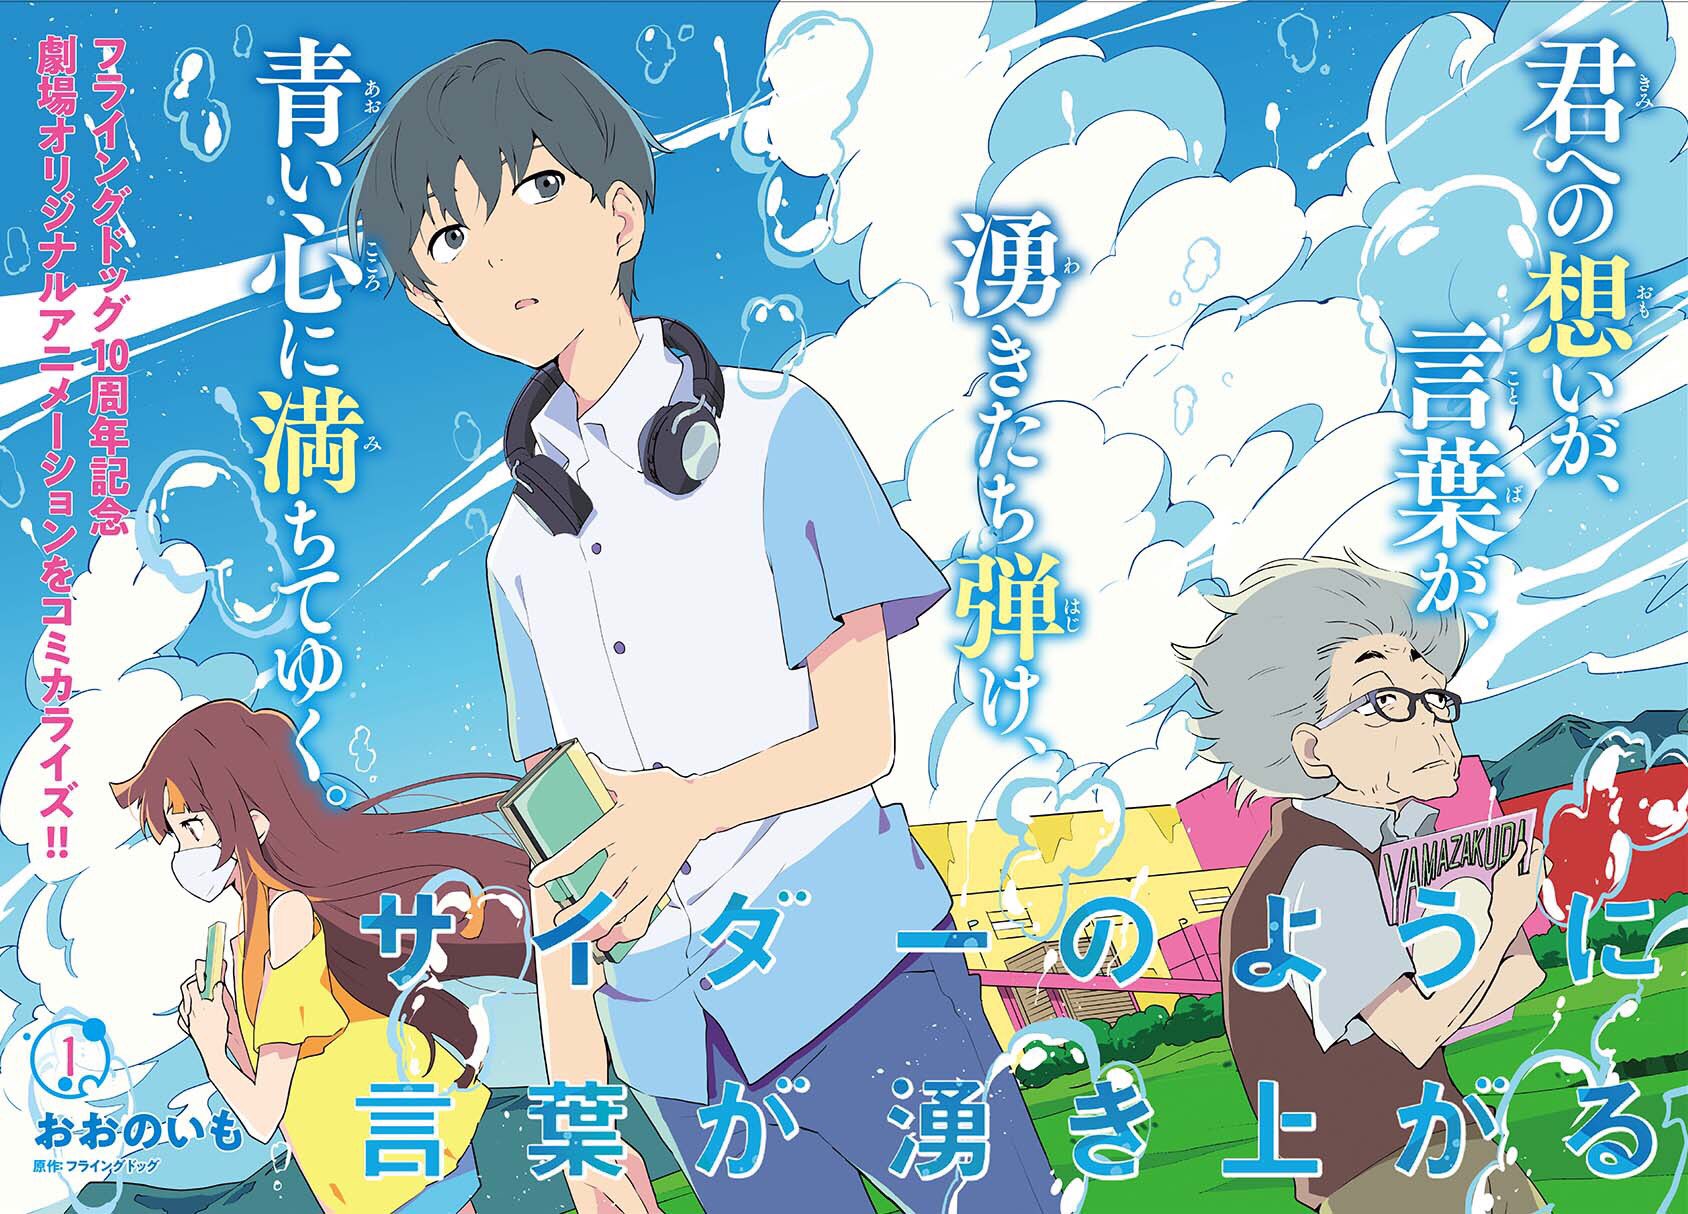 5+ Best Anime Like Bubble You Must Watch - Solu